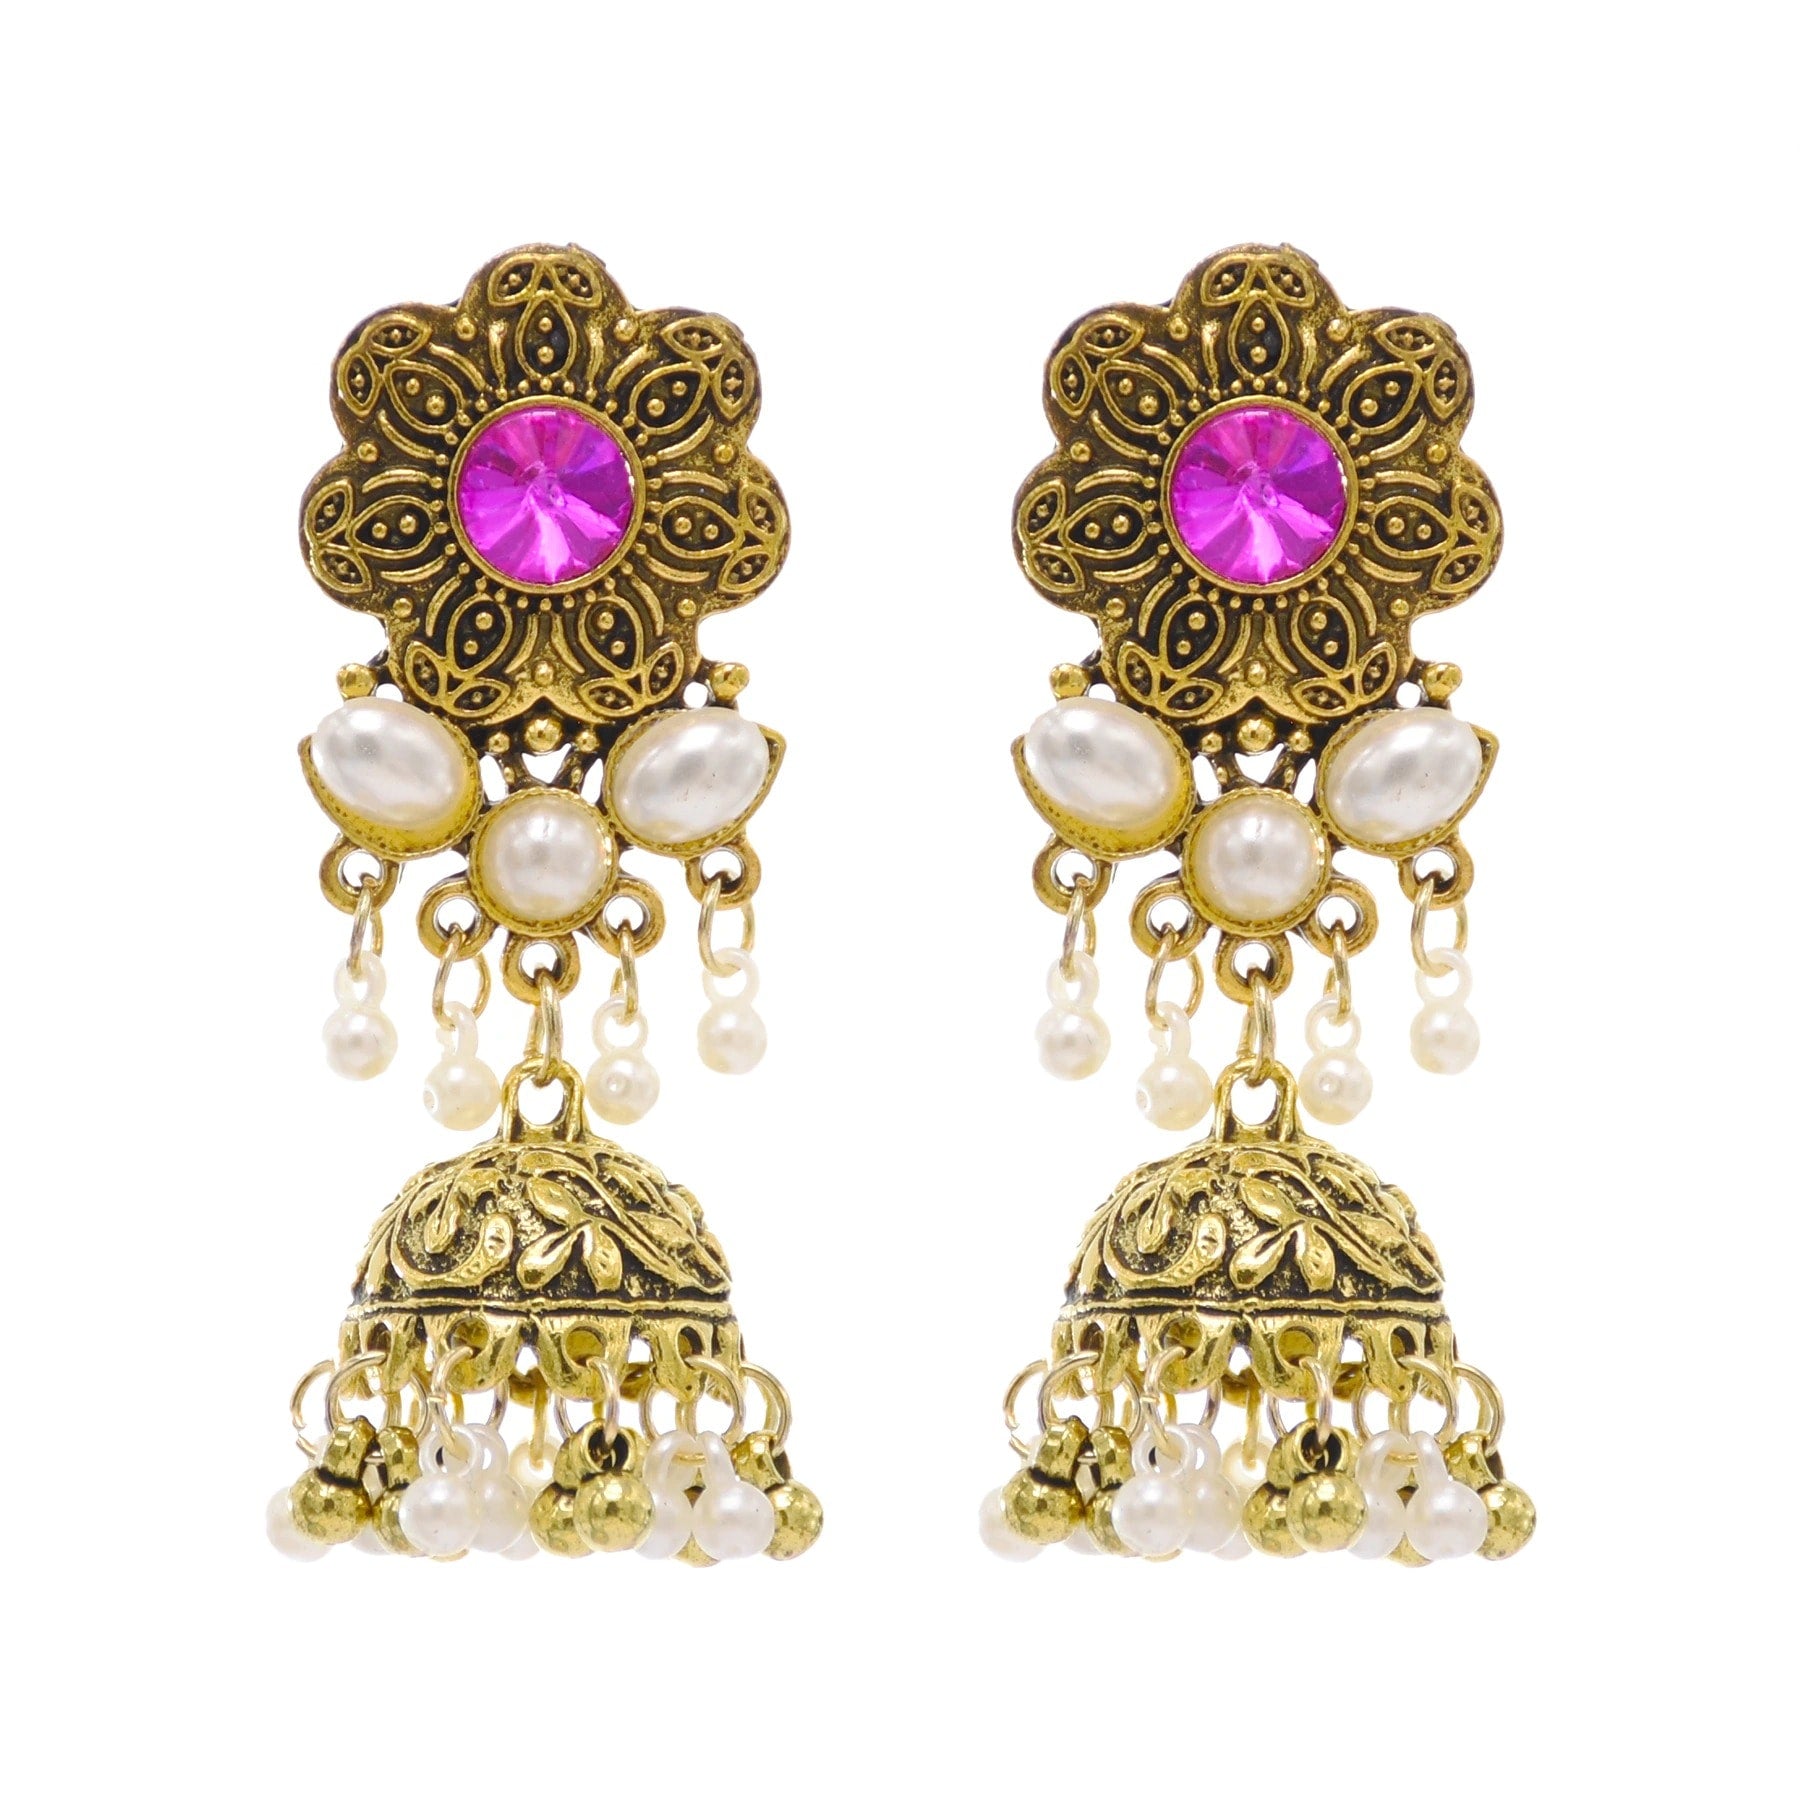 Cercei aurii, stil indian, cu pietre si perle, Sofine C6